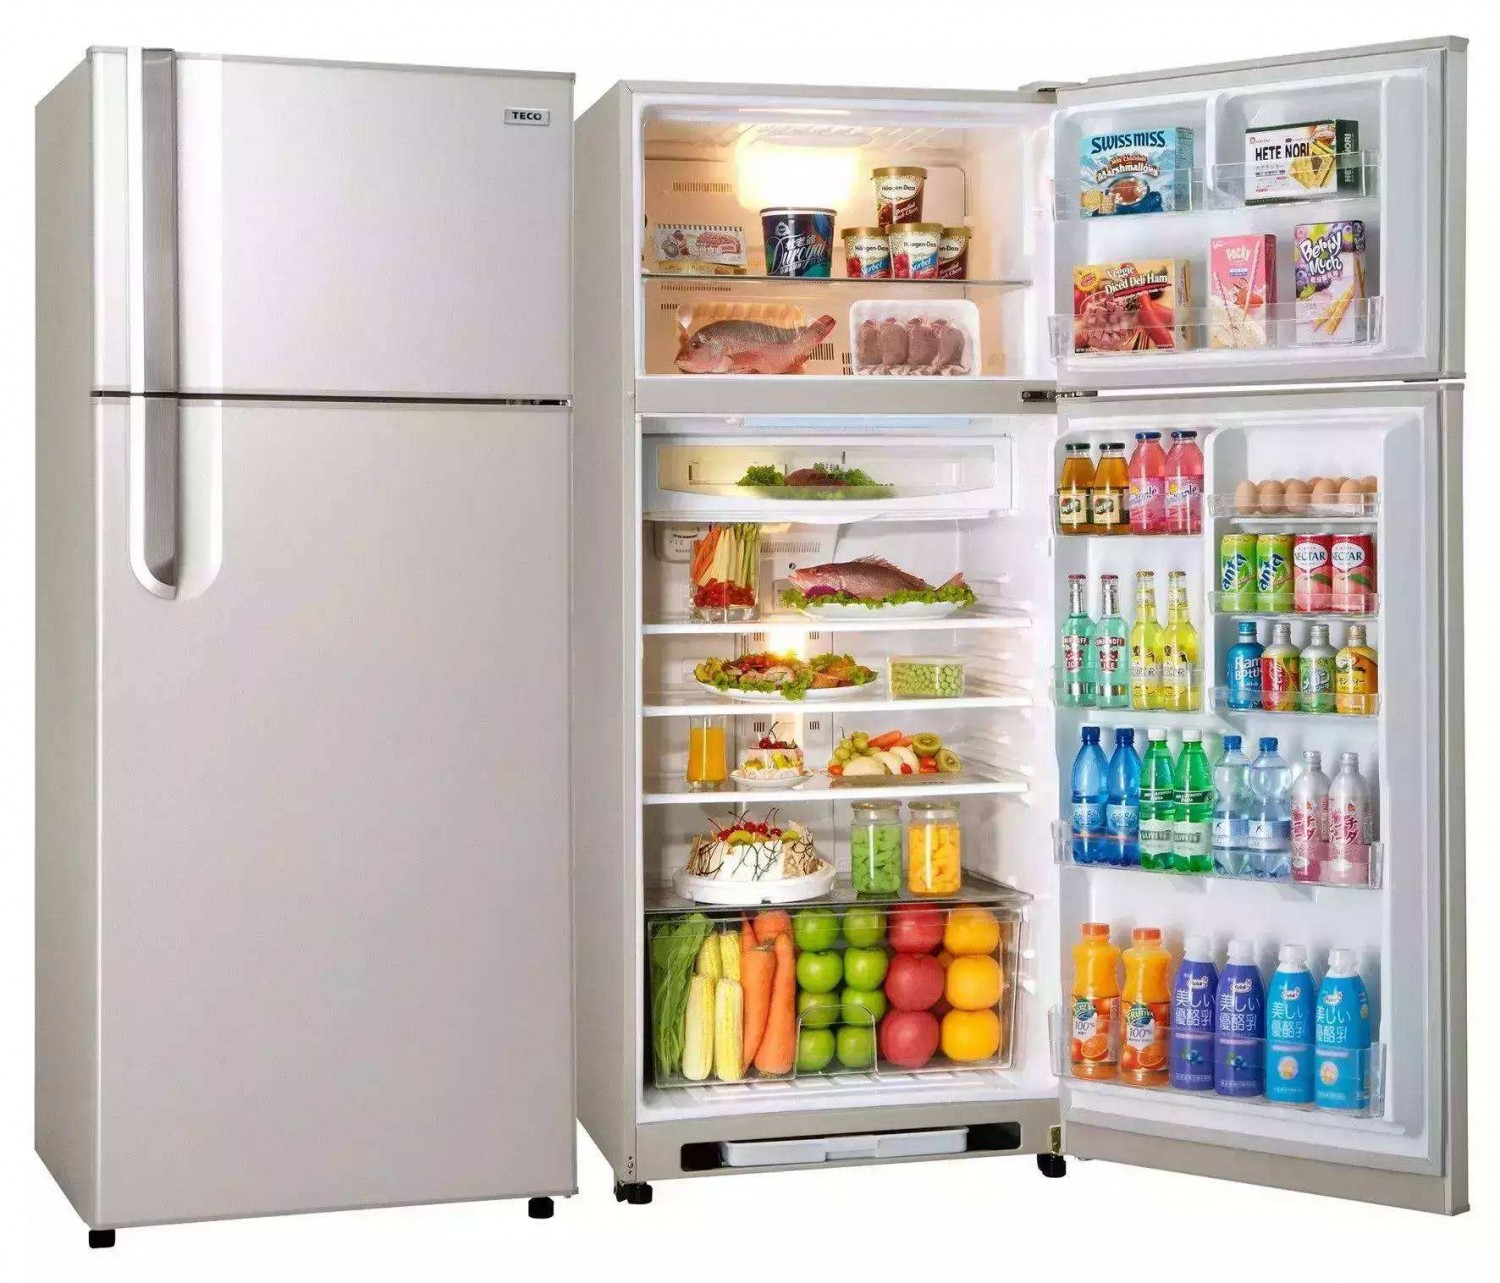 【美的BCD-550WKGPZM】美的冰箱,BCD-550WKGPZM,官方报价_规格_参数_图片-美的商城